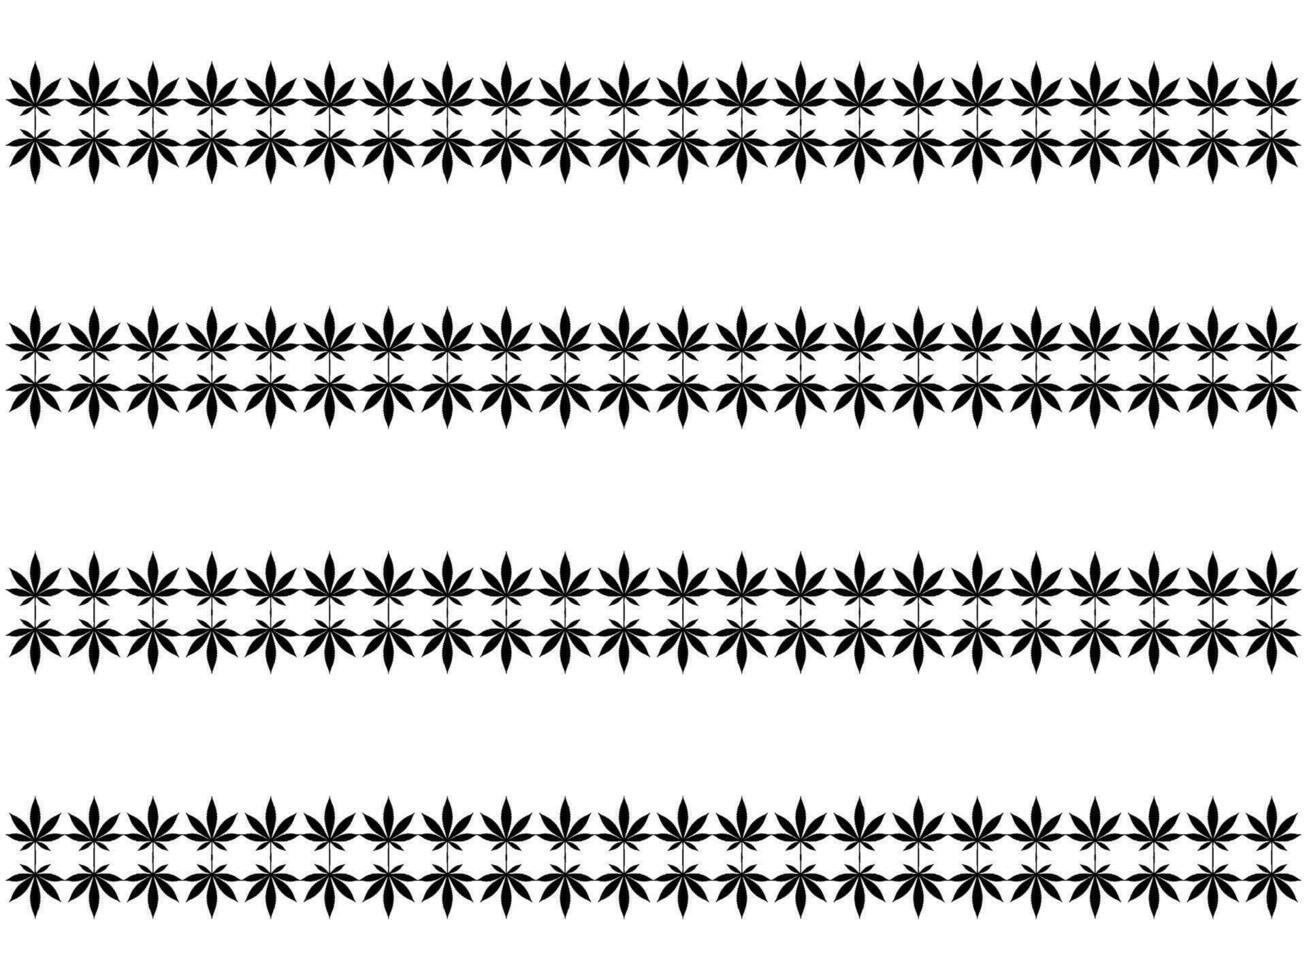 hennep ook bekend net zo marihuana blad silhouet motieven patroon, kan gebruik voor decoratie, overladen, behang, achtergrond, textiel. mode, kleding stof, tegel, vloer, omslag, inpakken, enz. vector illustratie